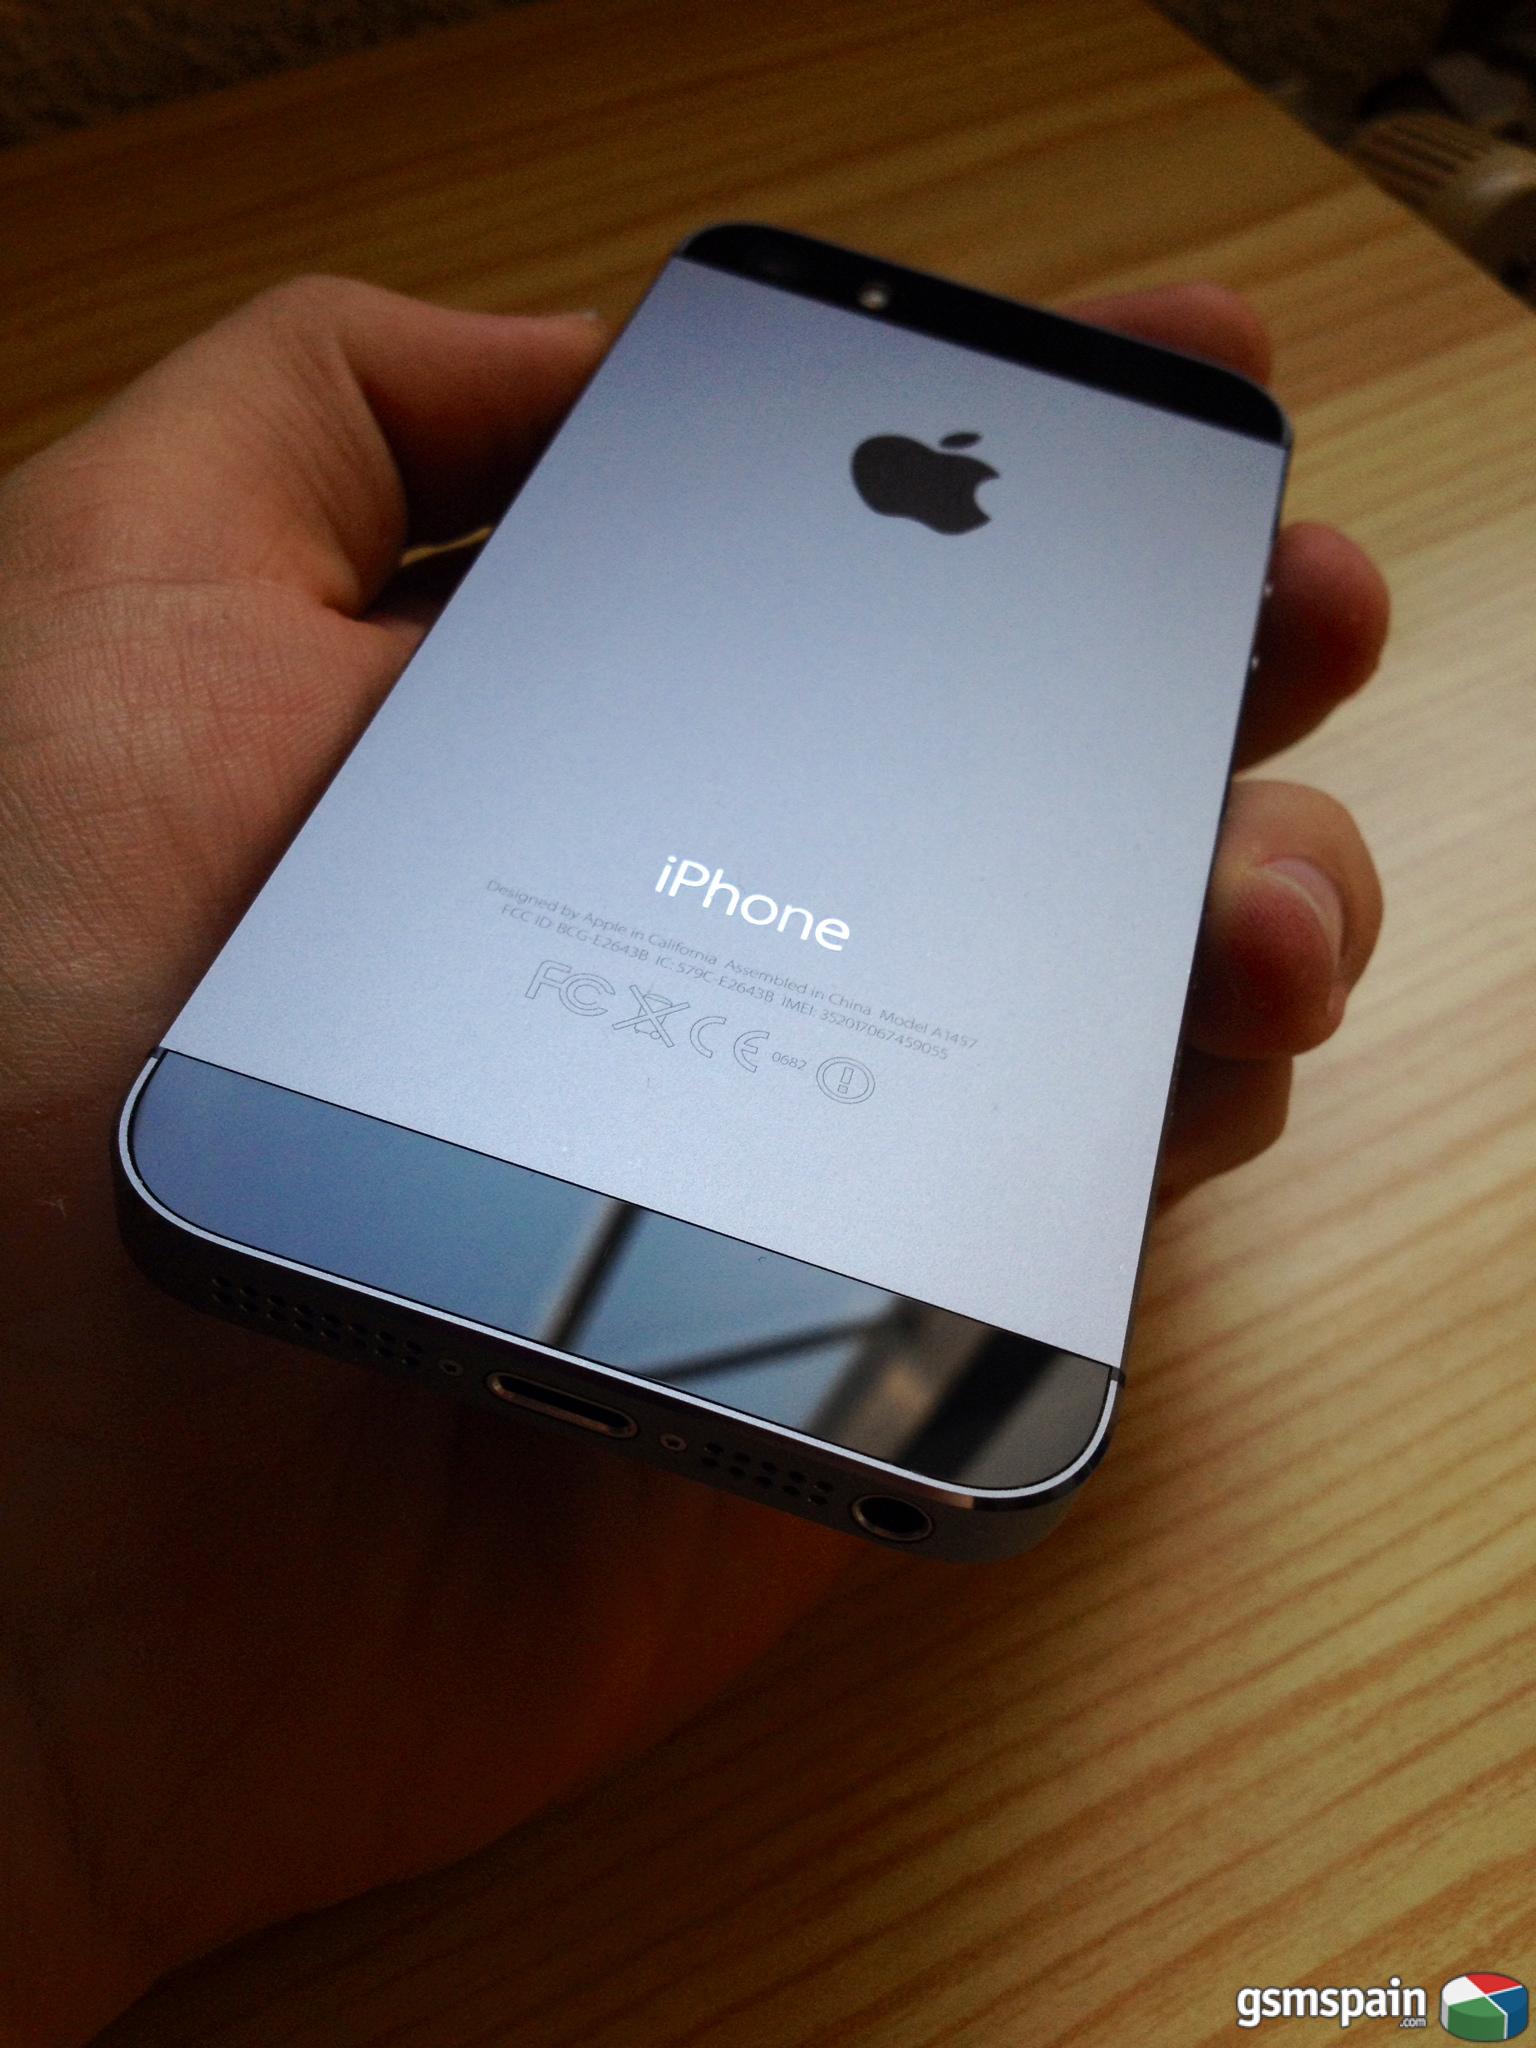 [VENDO] iPhone 5s 16Gb Space Gray libre factura garanta